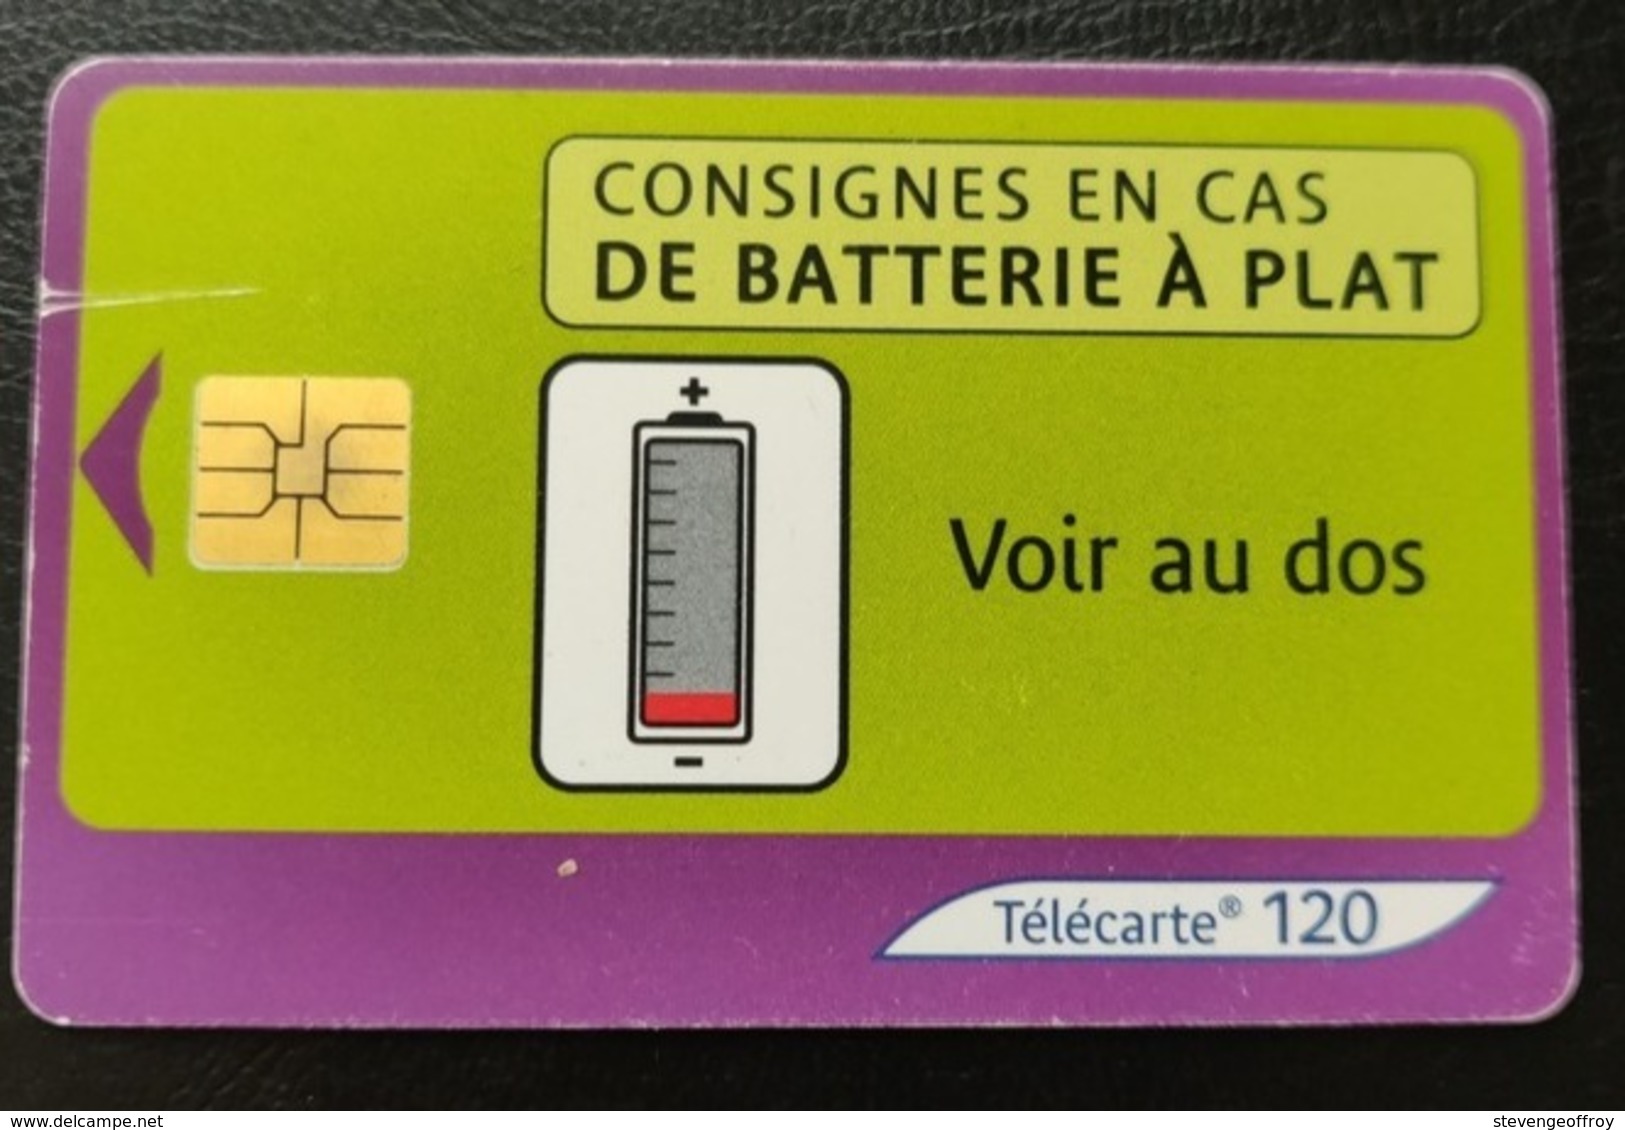 Telecarte France Publique 2003 Batterie Instruments De Mesure - 2003